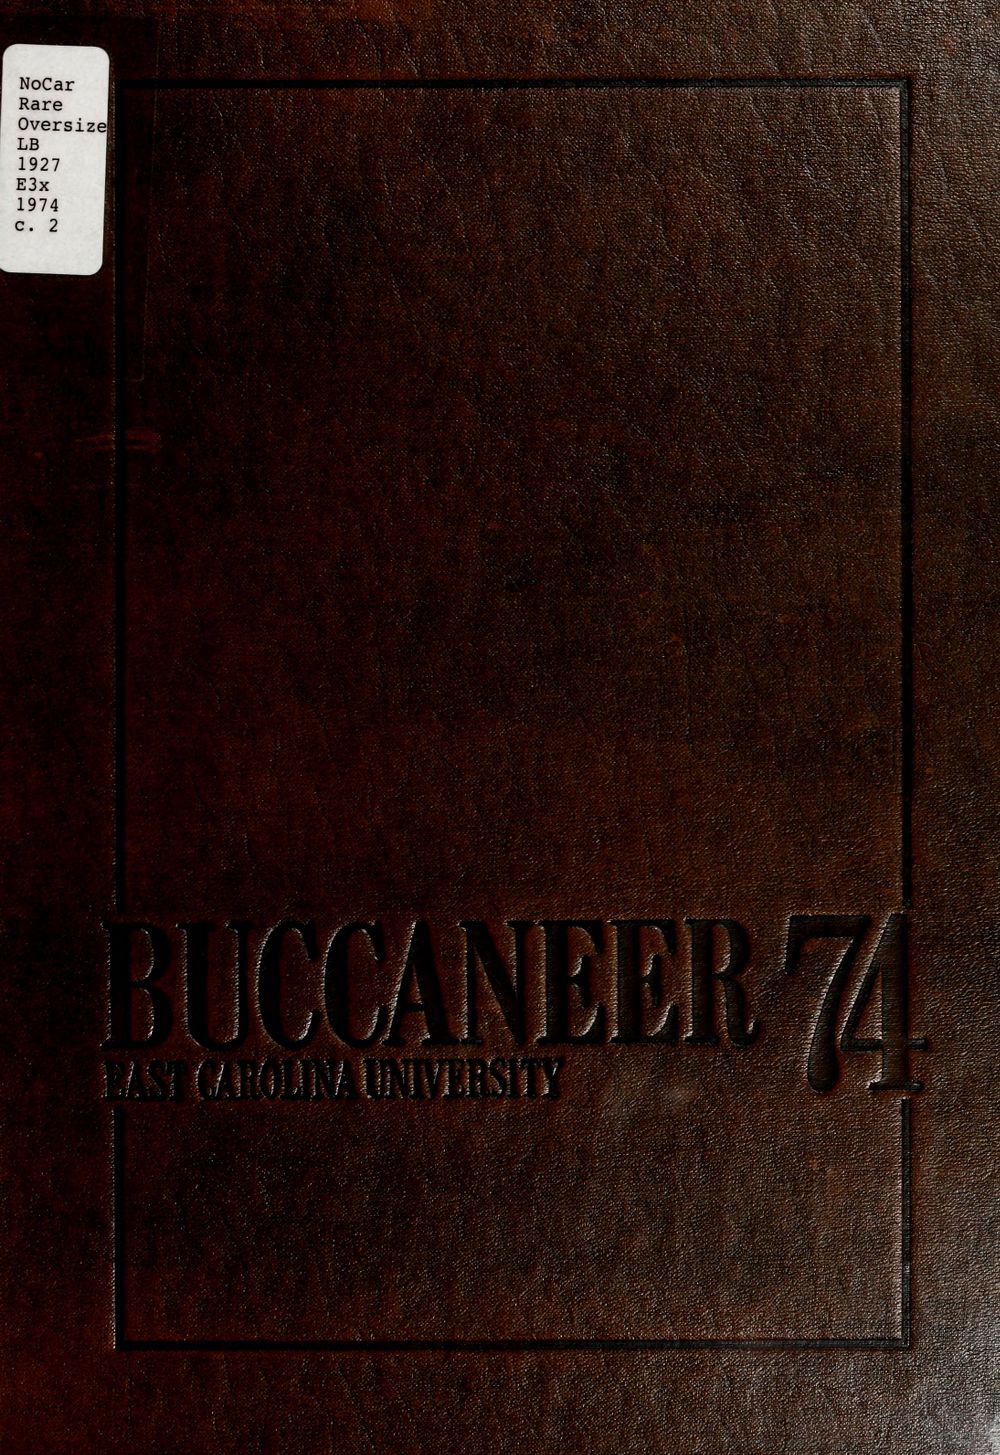 Buccaneer 1974 photo